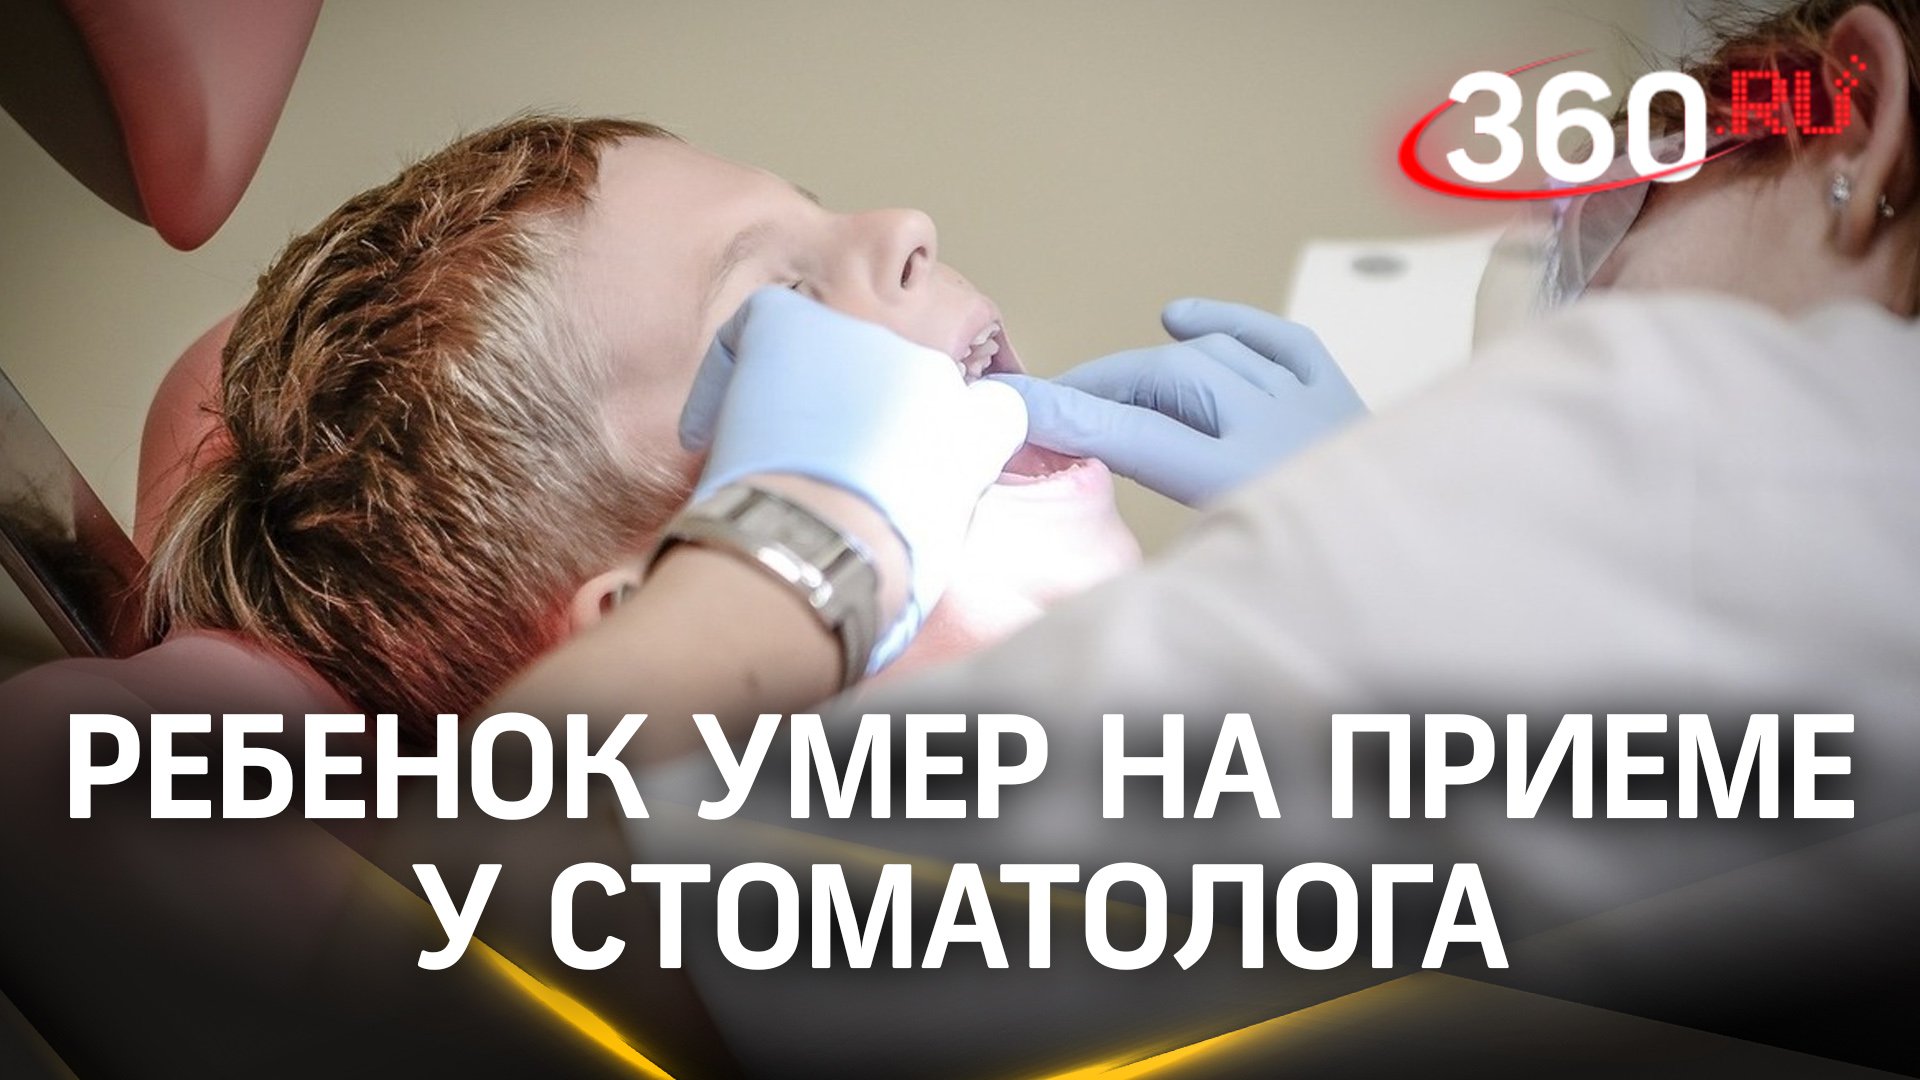 Причиной смерти ребенка в стоматологии Красноярская могла стать анестезия – сестра погибшего